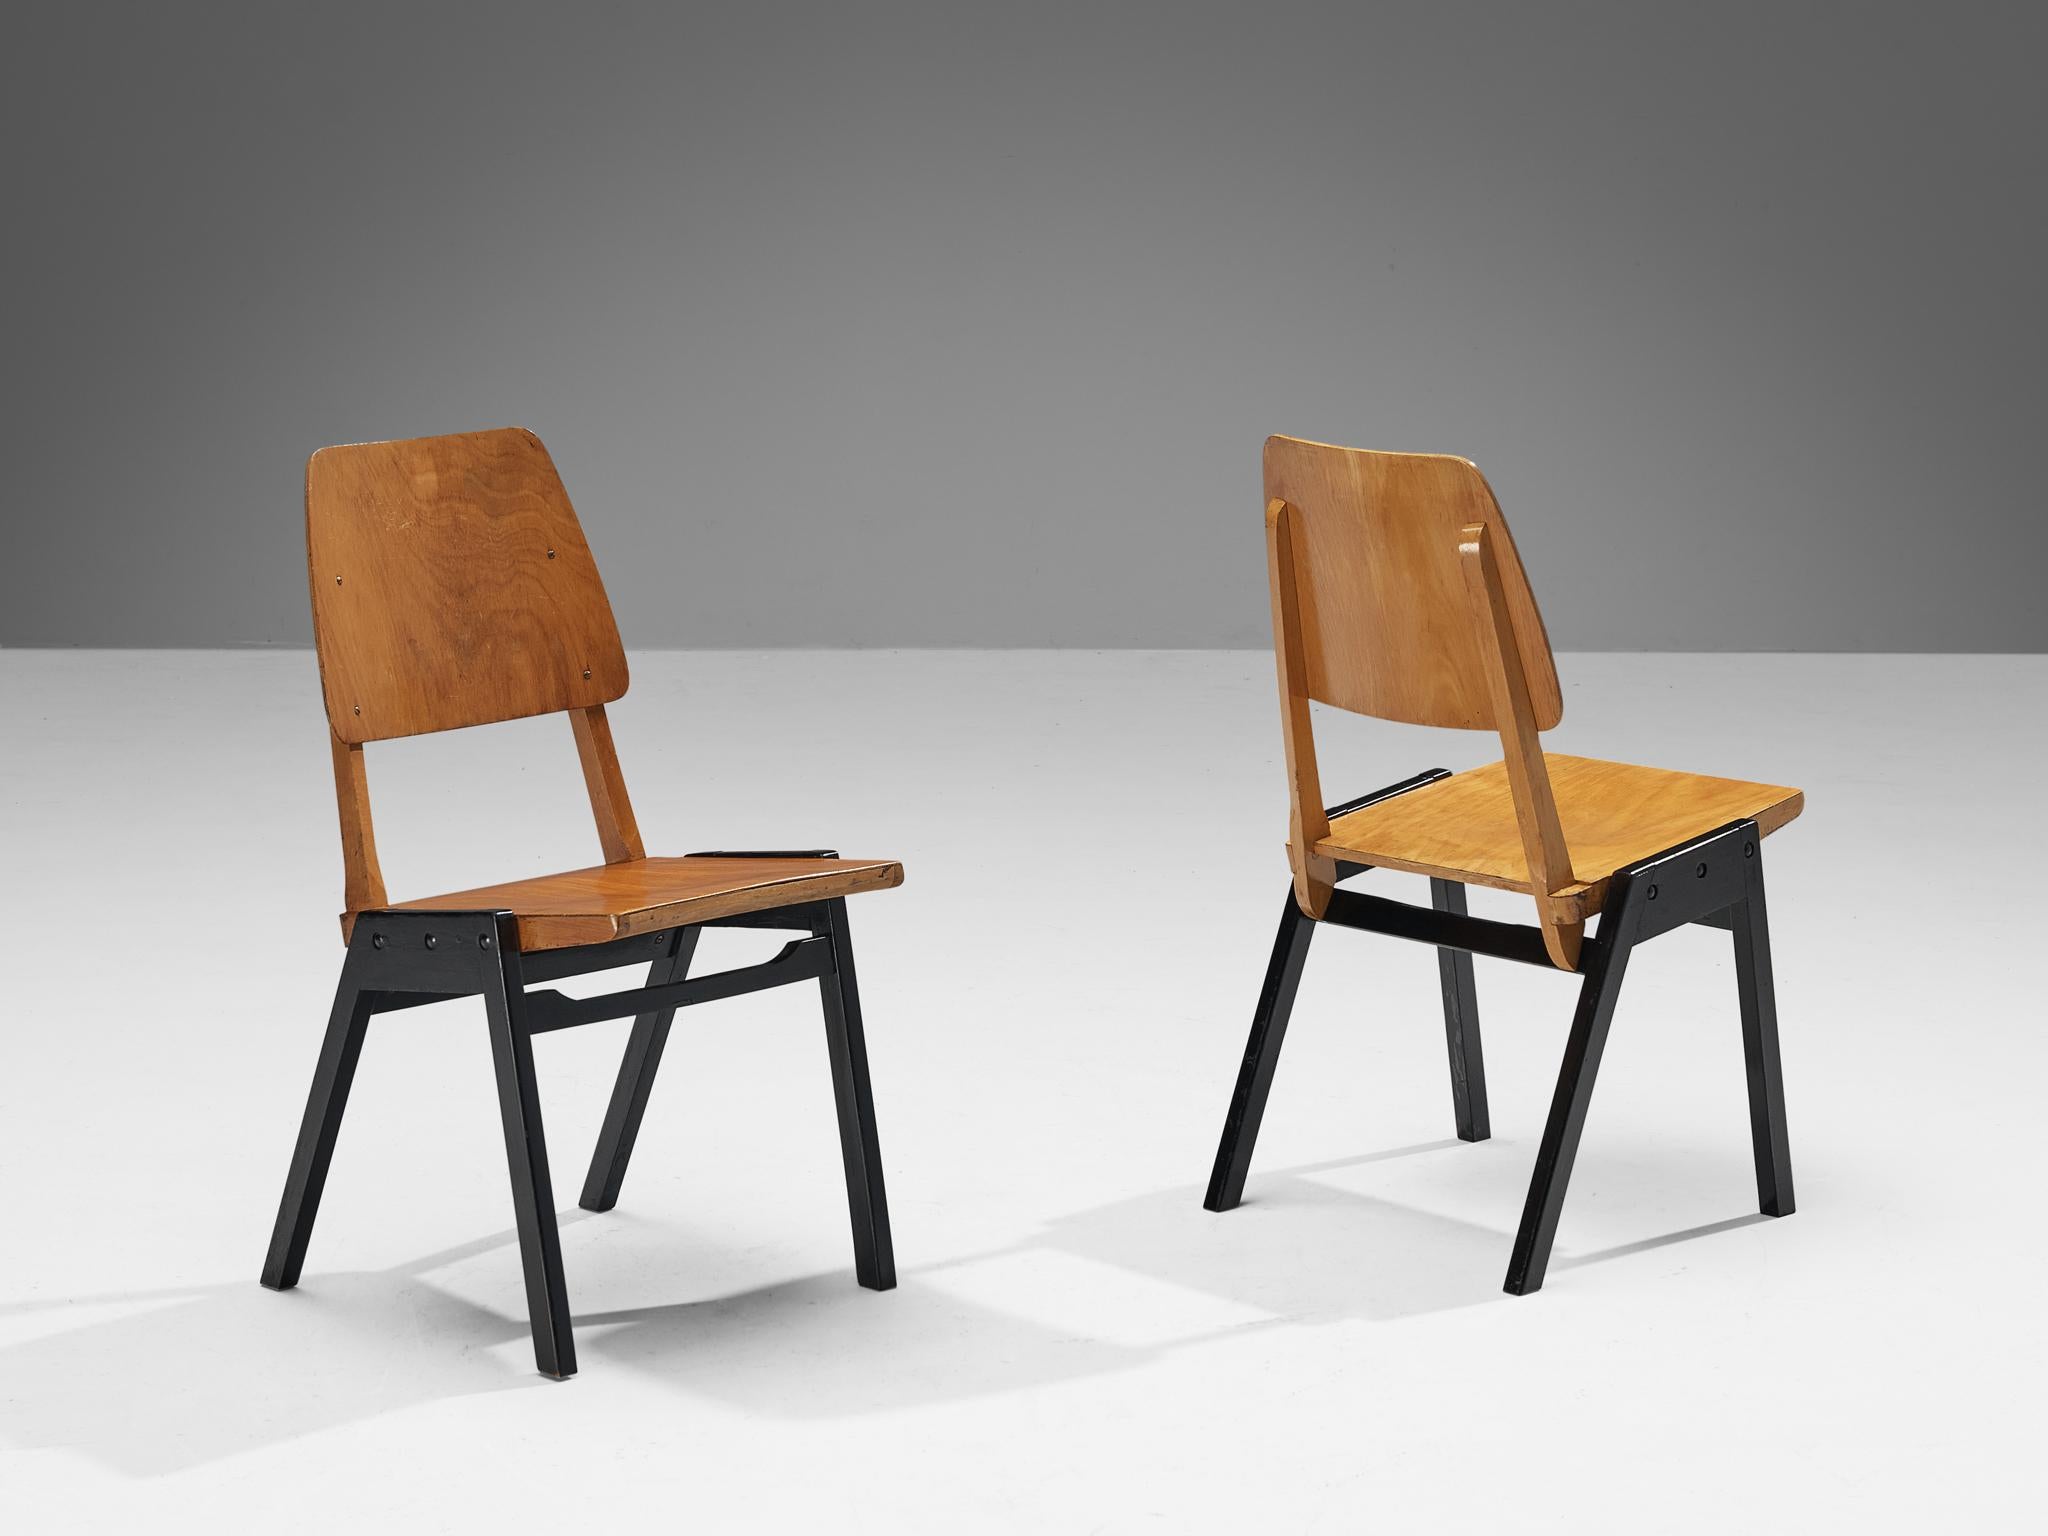 Roland Rainer, Paar Esszimmerstühle, Buche gebeizt, Buche lackiert, Österreich, 1950er Jahre.

Diese Esszimmerstühle haben ein minimalistisches Design, das sich durch eine offene Bauweise mit Betonung auf konstruktive Details auszeichnet. Die